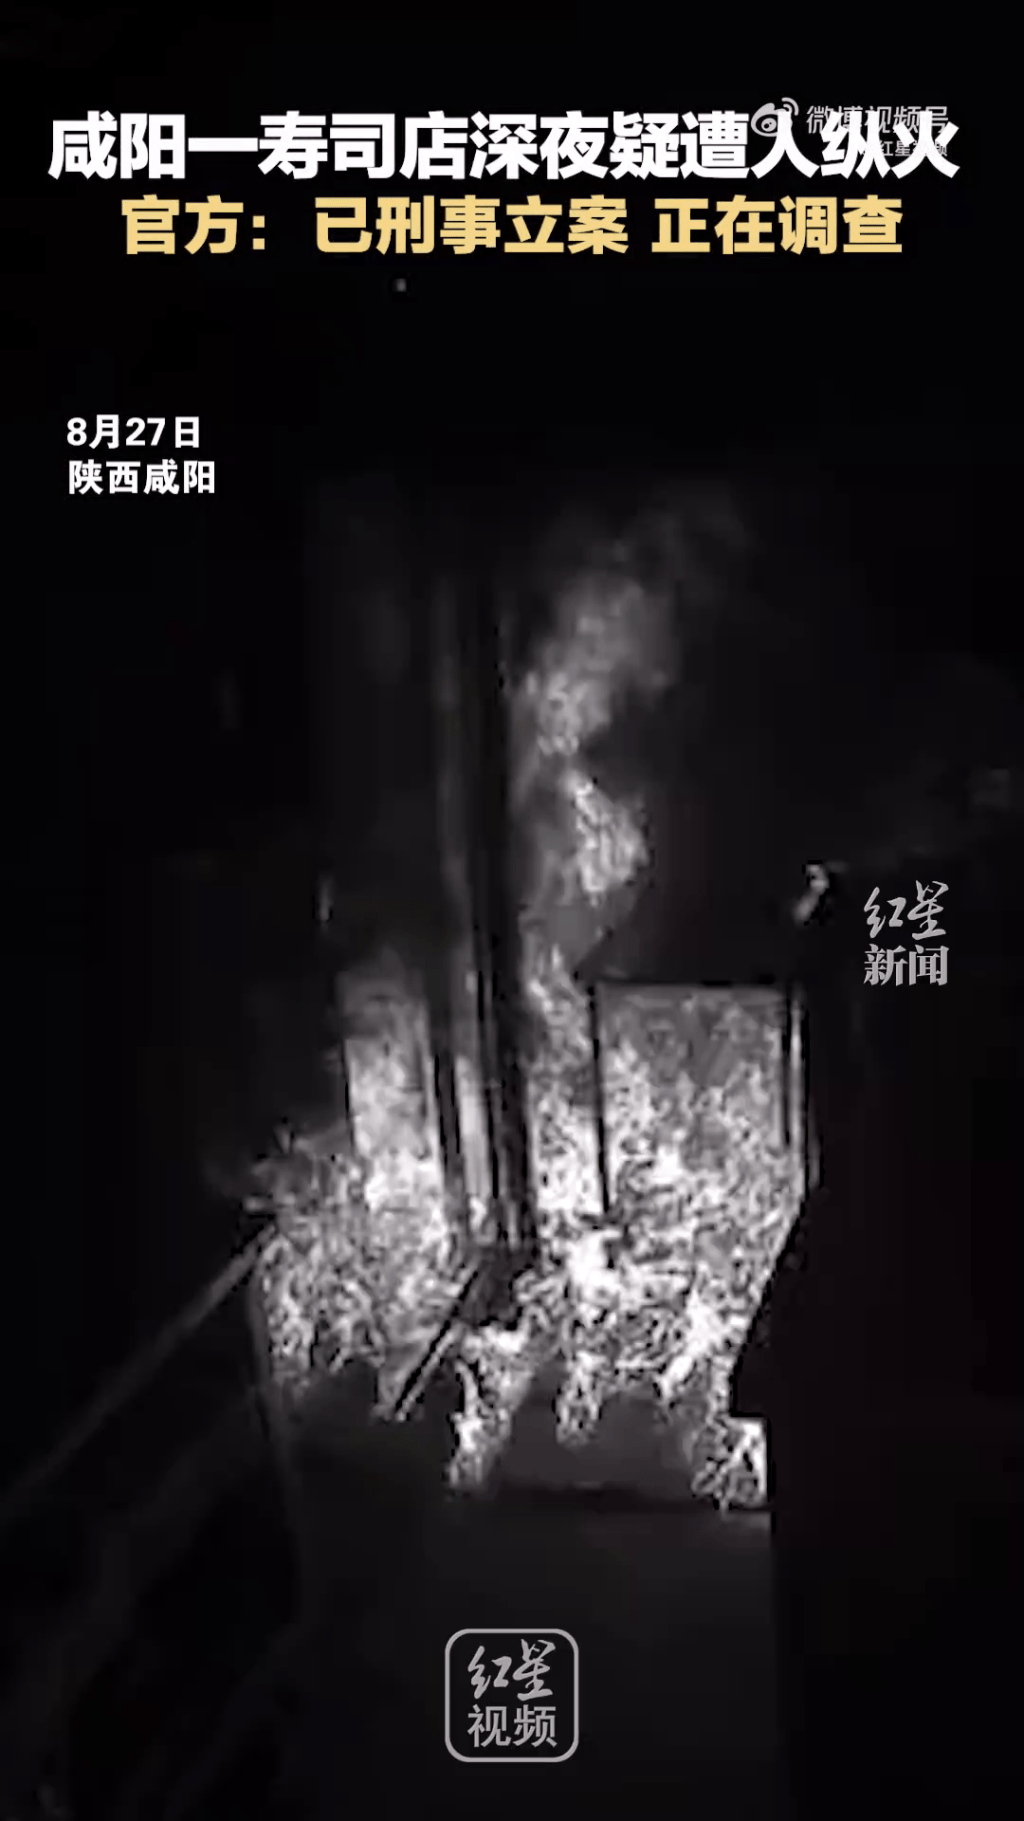 壽司店門口突然燃起大火，閉路電視畫面也白化了。